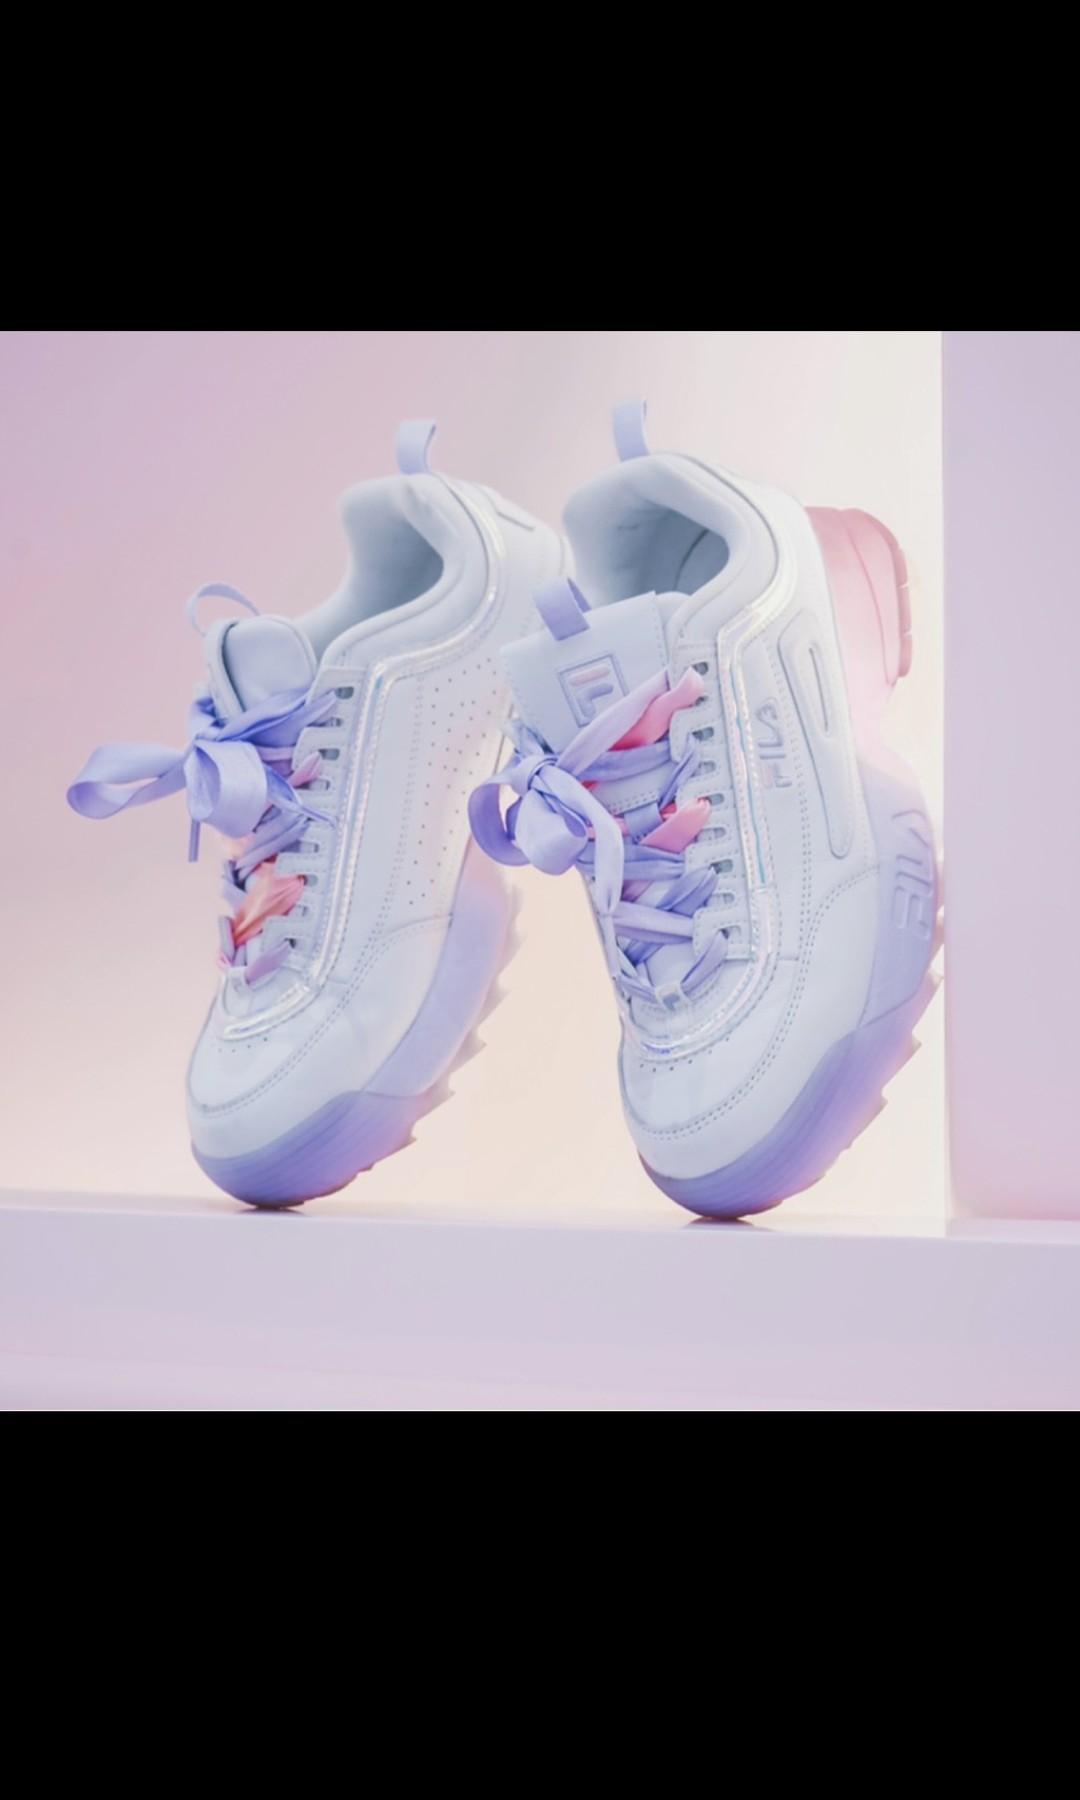 FILA Disruptor II - Korea pink/purple pastel, Women's Fashion, Footwear,  Sneakers on Carousell